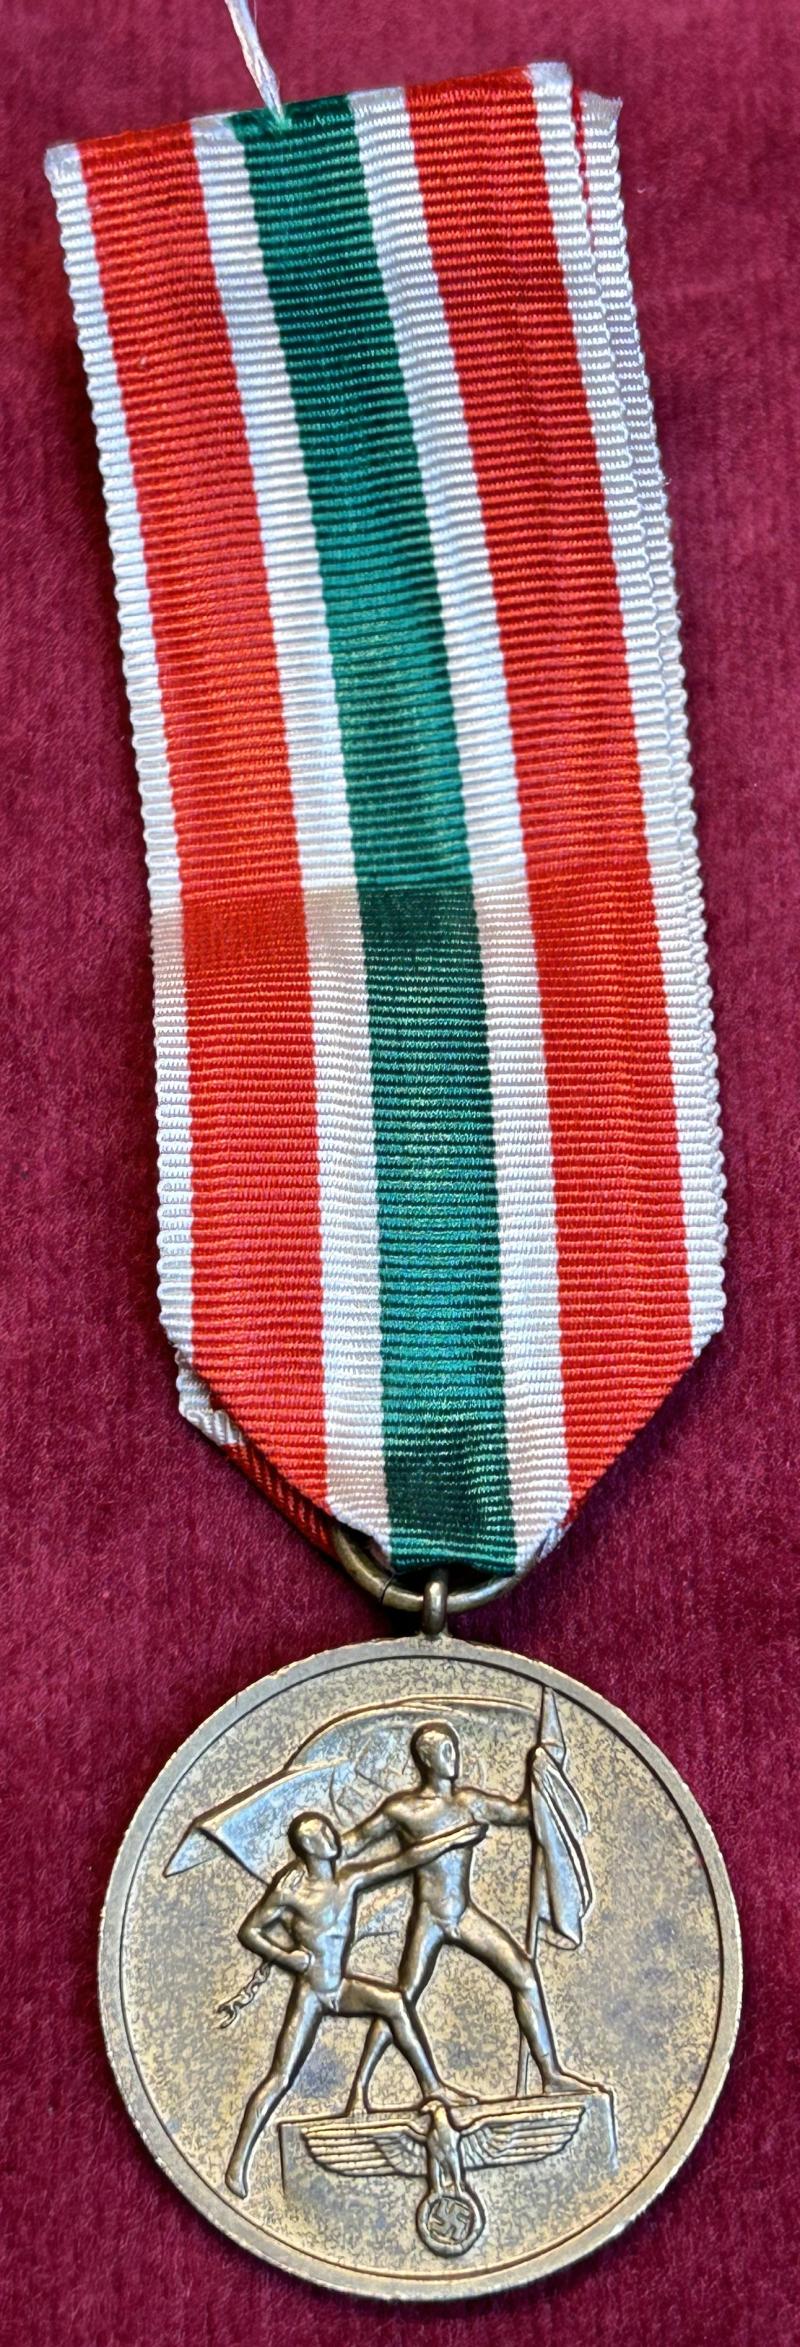 3rd Reich Medaille Heimkehr des Memellandes (Hauptmünzamt Berlin)